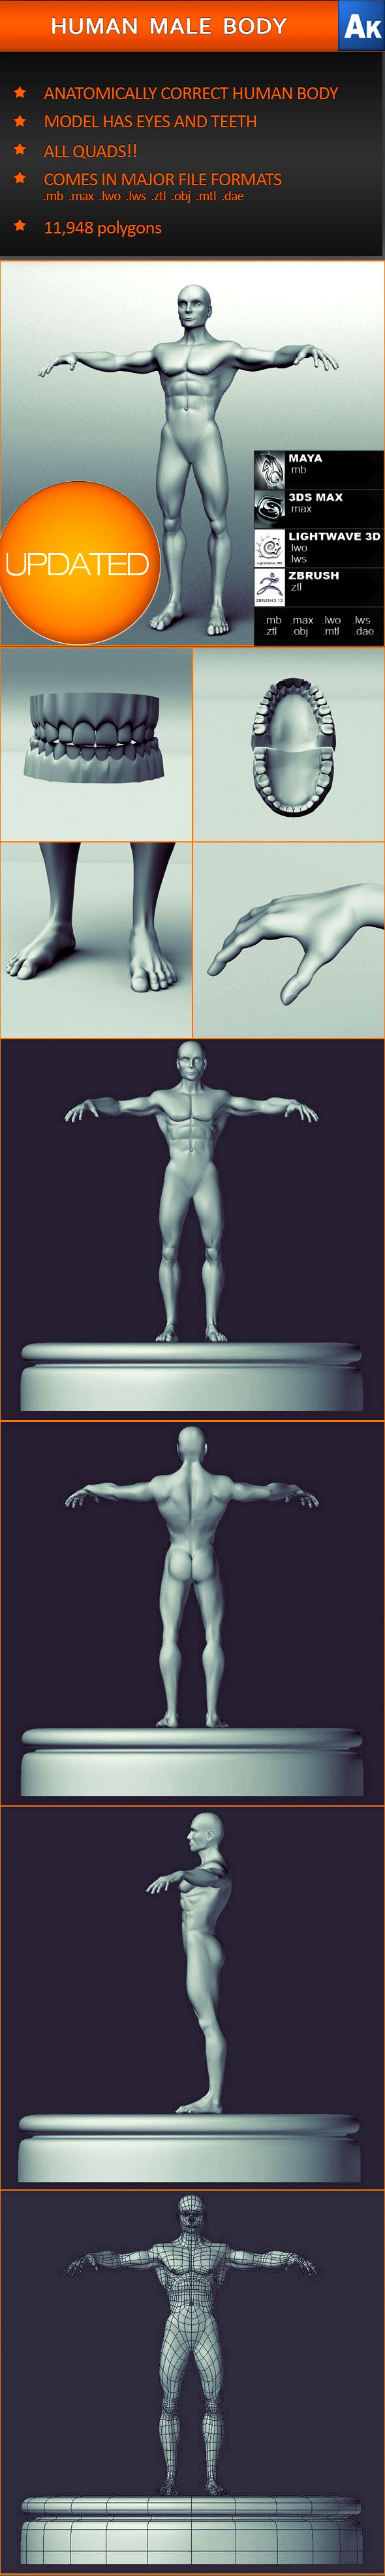 Human Male Body (Anatomically correct)